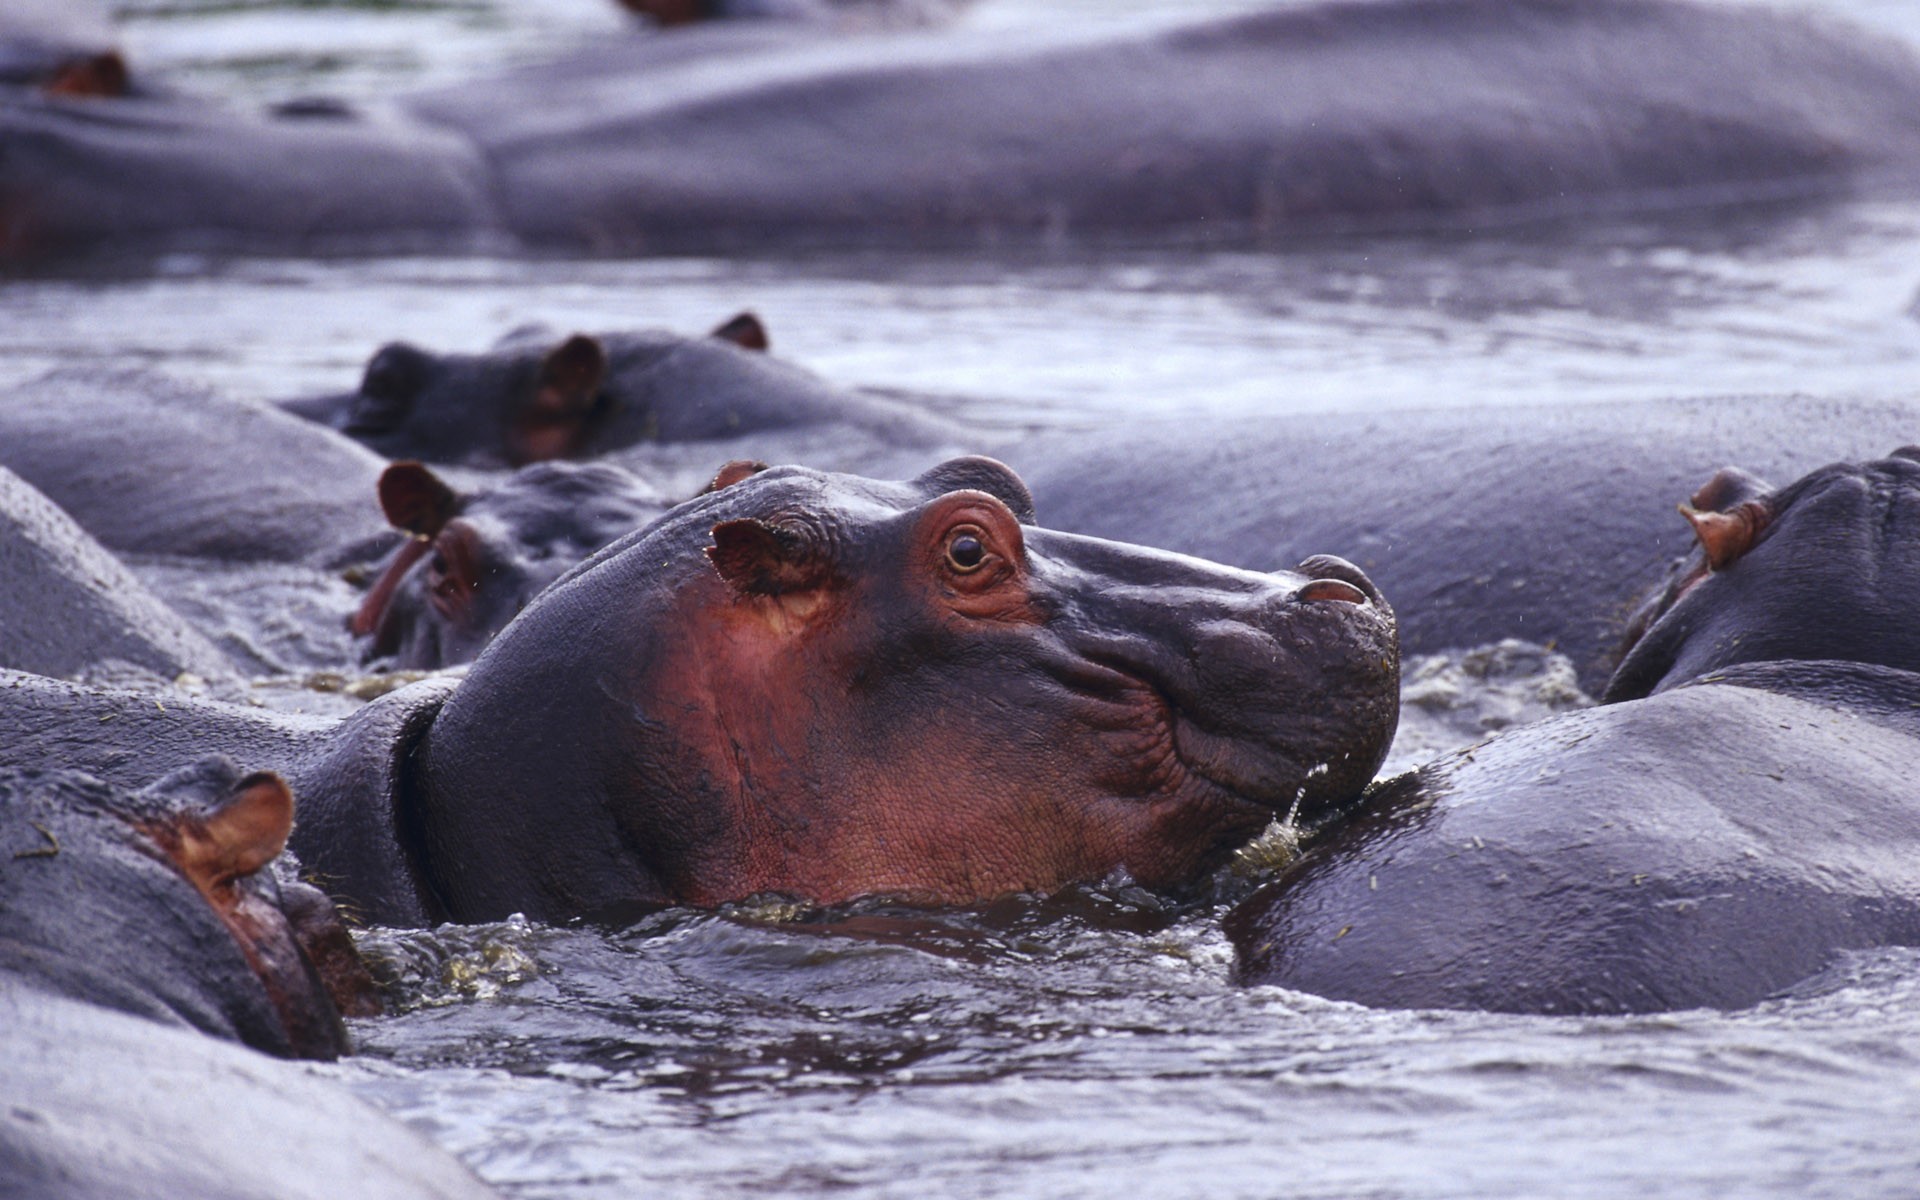 wildlife, hippopotamus, Africa, Wild Africa - desktop wallpaper